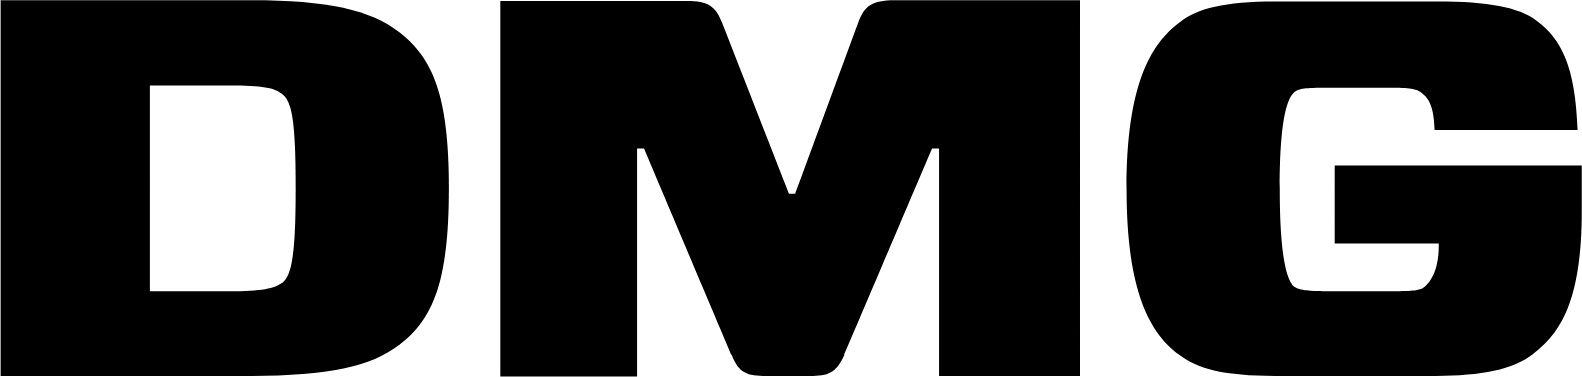 DMG Mori logo (PNG transparent)